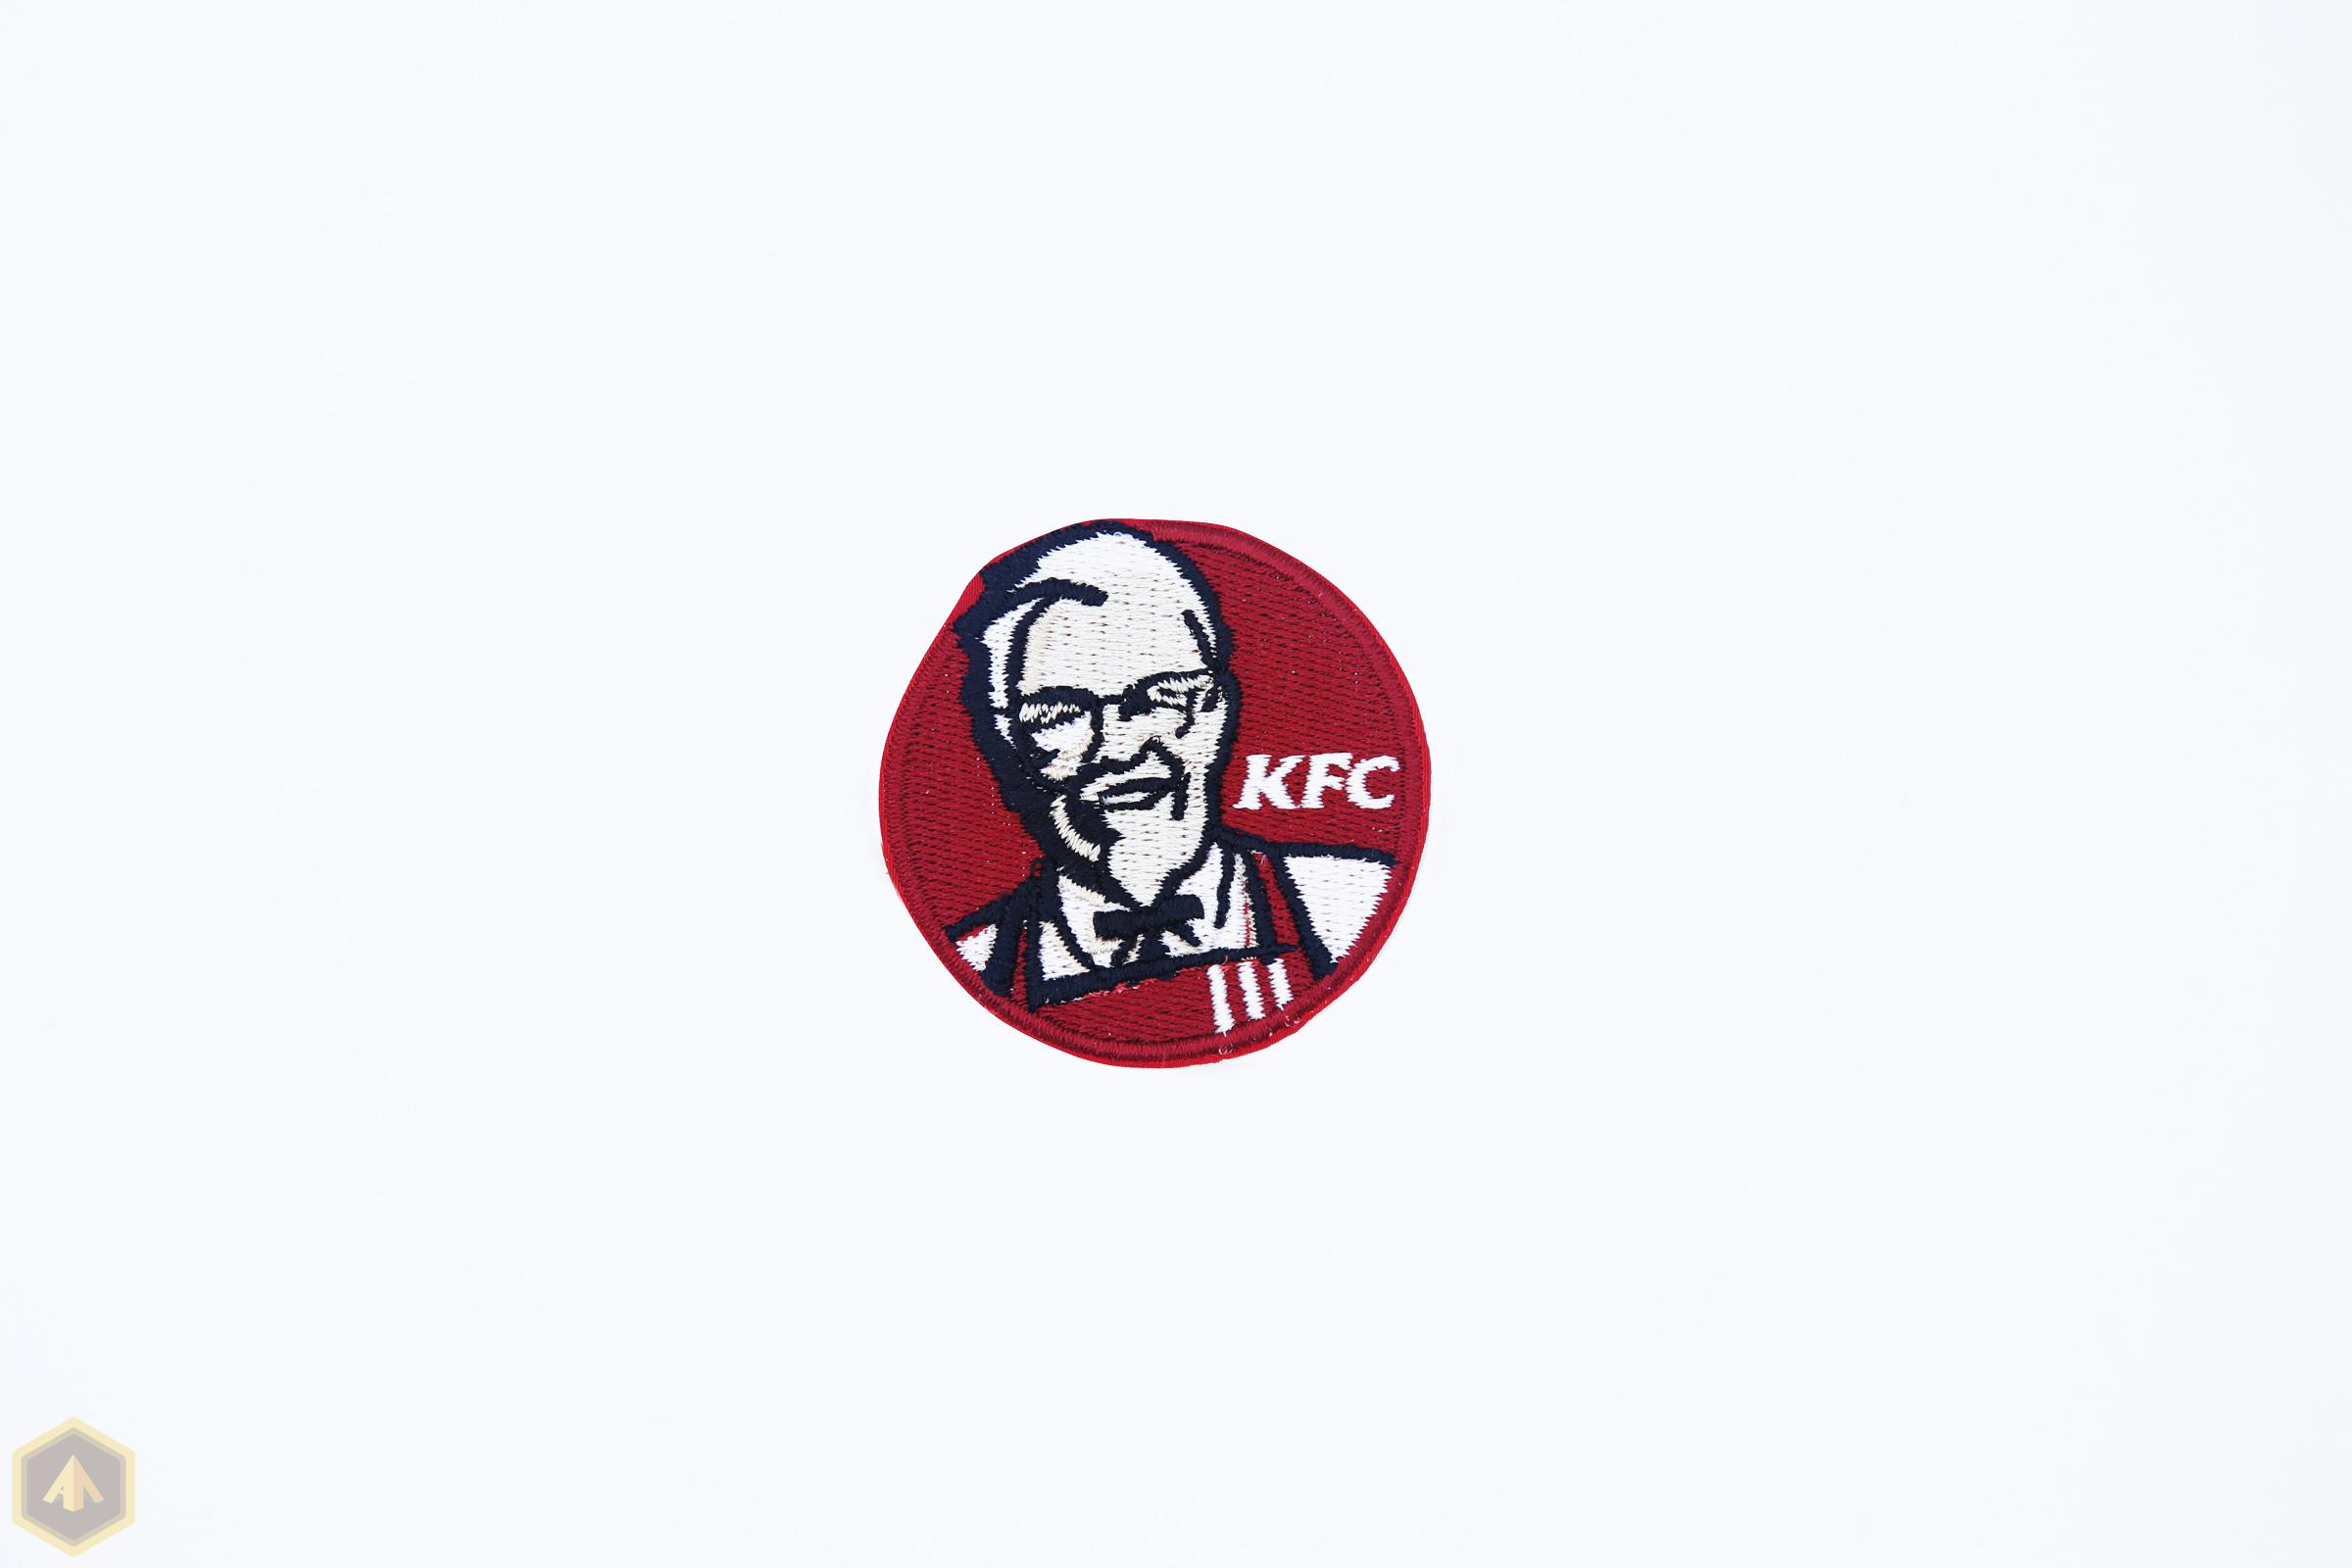 Вышивка на спецодежд KFC — 2